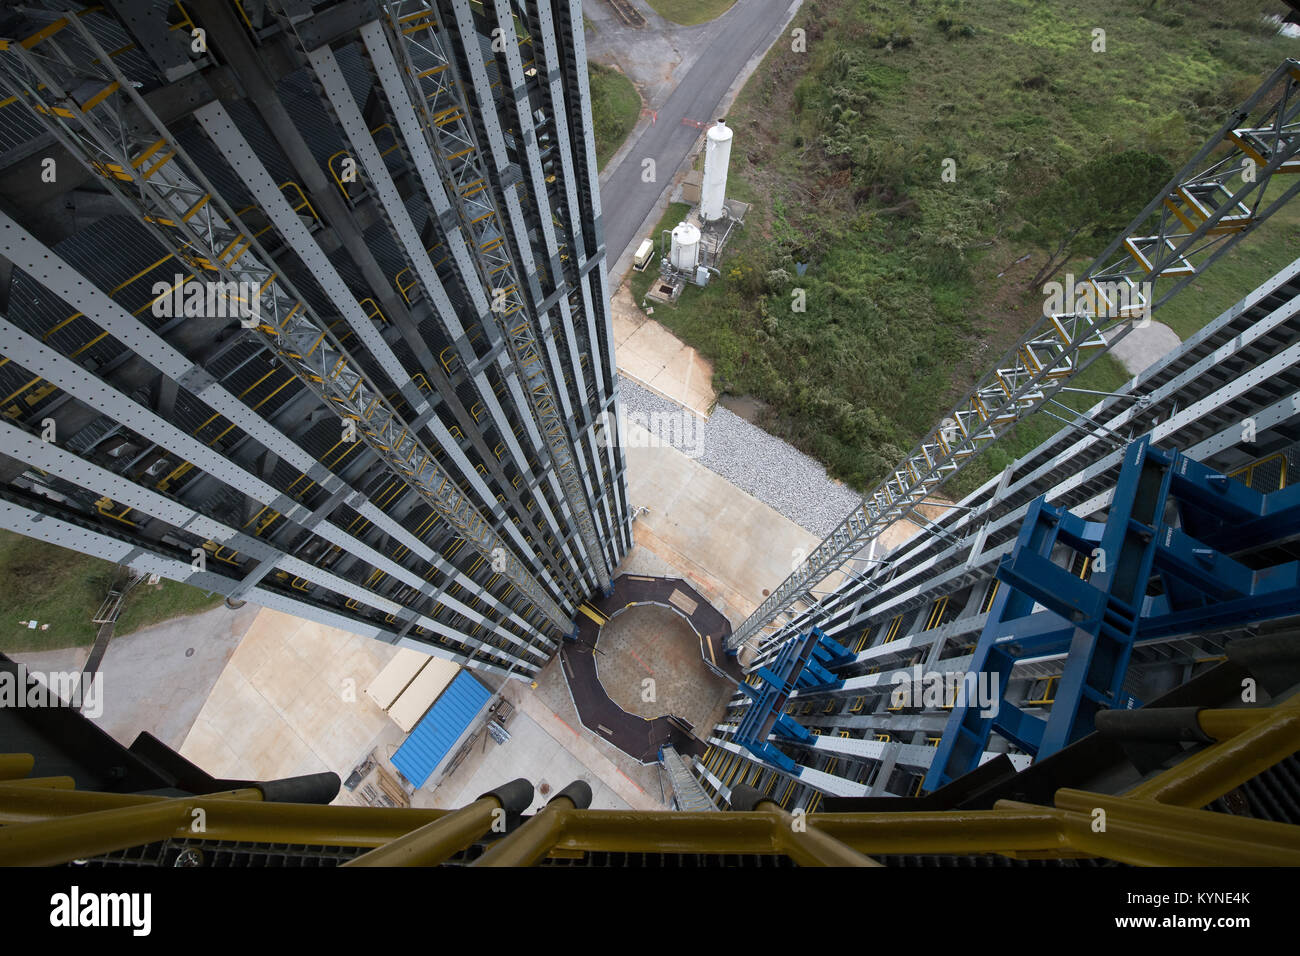 Le 215-foot-tall structural test Support pour système de lancement de la NASA est vu Dimanche, 24 septembre 2017, à la NASA's Marshall Space Flight Center à Huntsville, Alabama. Crédit photo : NASA/Bill Ingalls) Banque D'Images